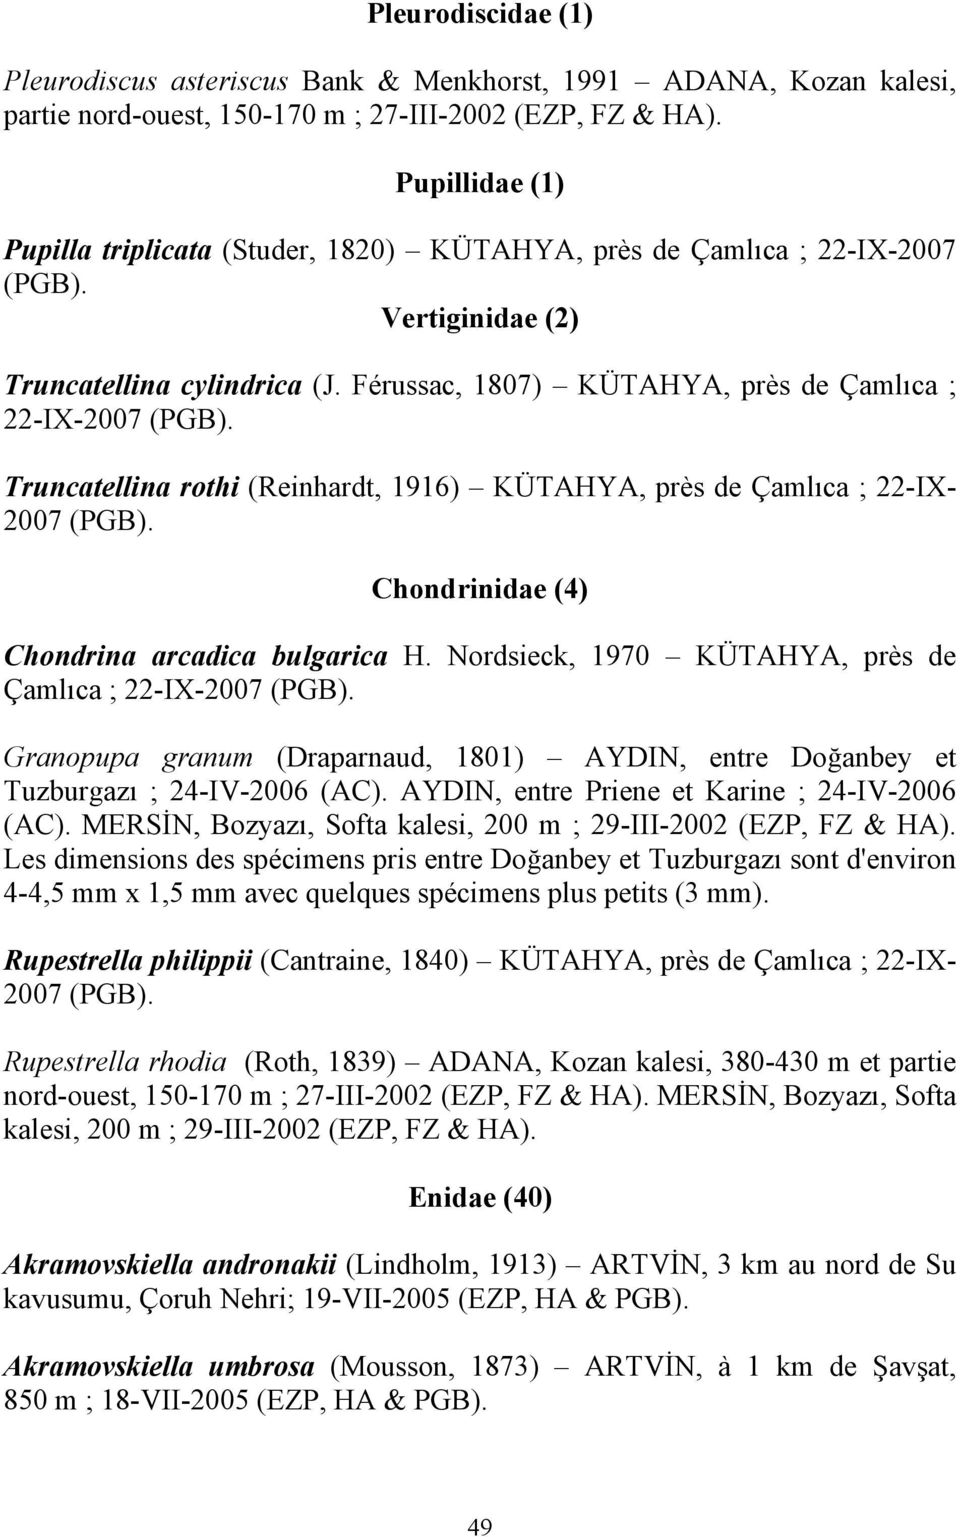 Truncatellina rothi (Reinhardt, 1916) KÜTAHYA, près de Çamlıca ; 22-IX- 2007 (PGB). Chondrinidae (4) Chondrina arcadica bulgarica H. Nordsieck, 1970 KÜTAHYA, près de Çamlıca ; 22-IX-2007 (PGB).